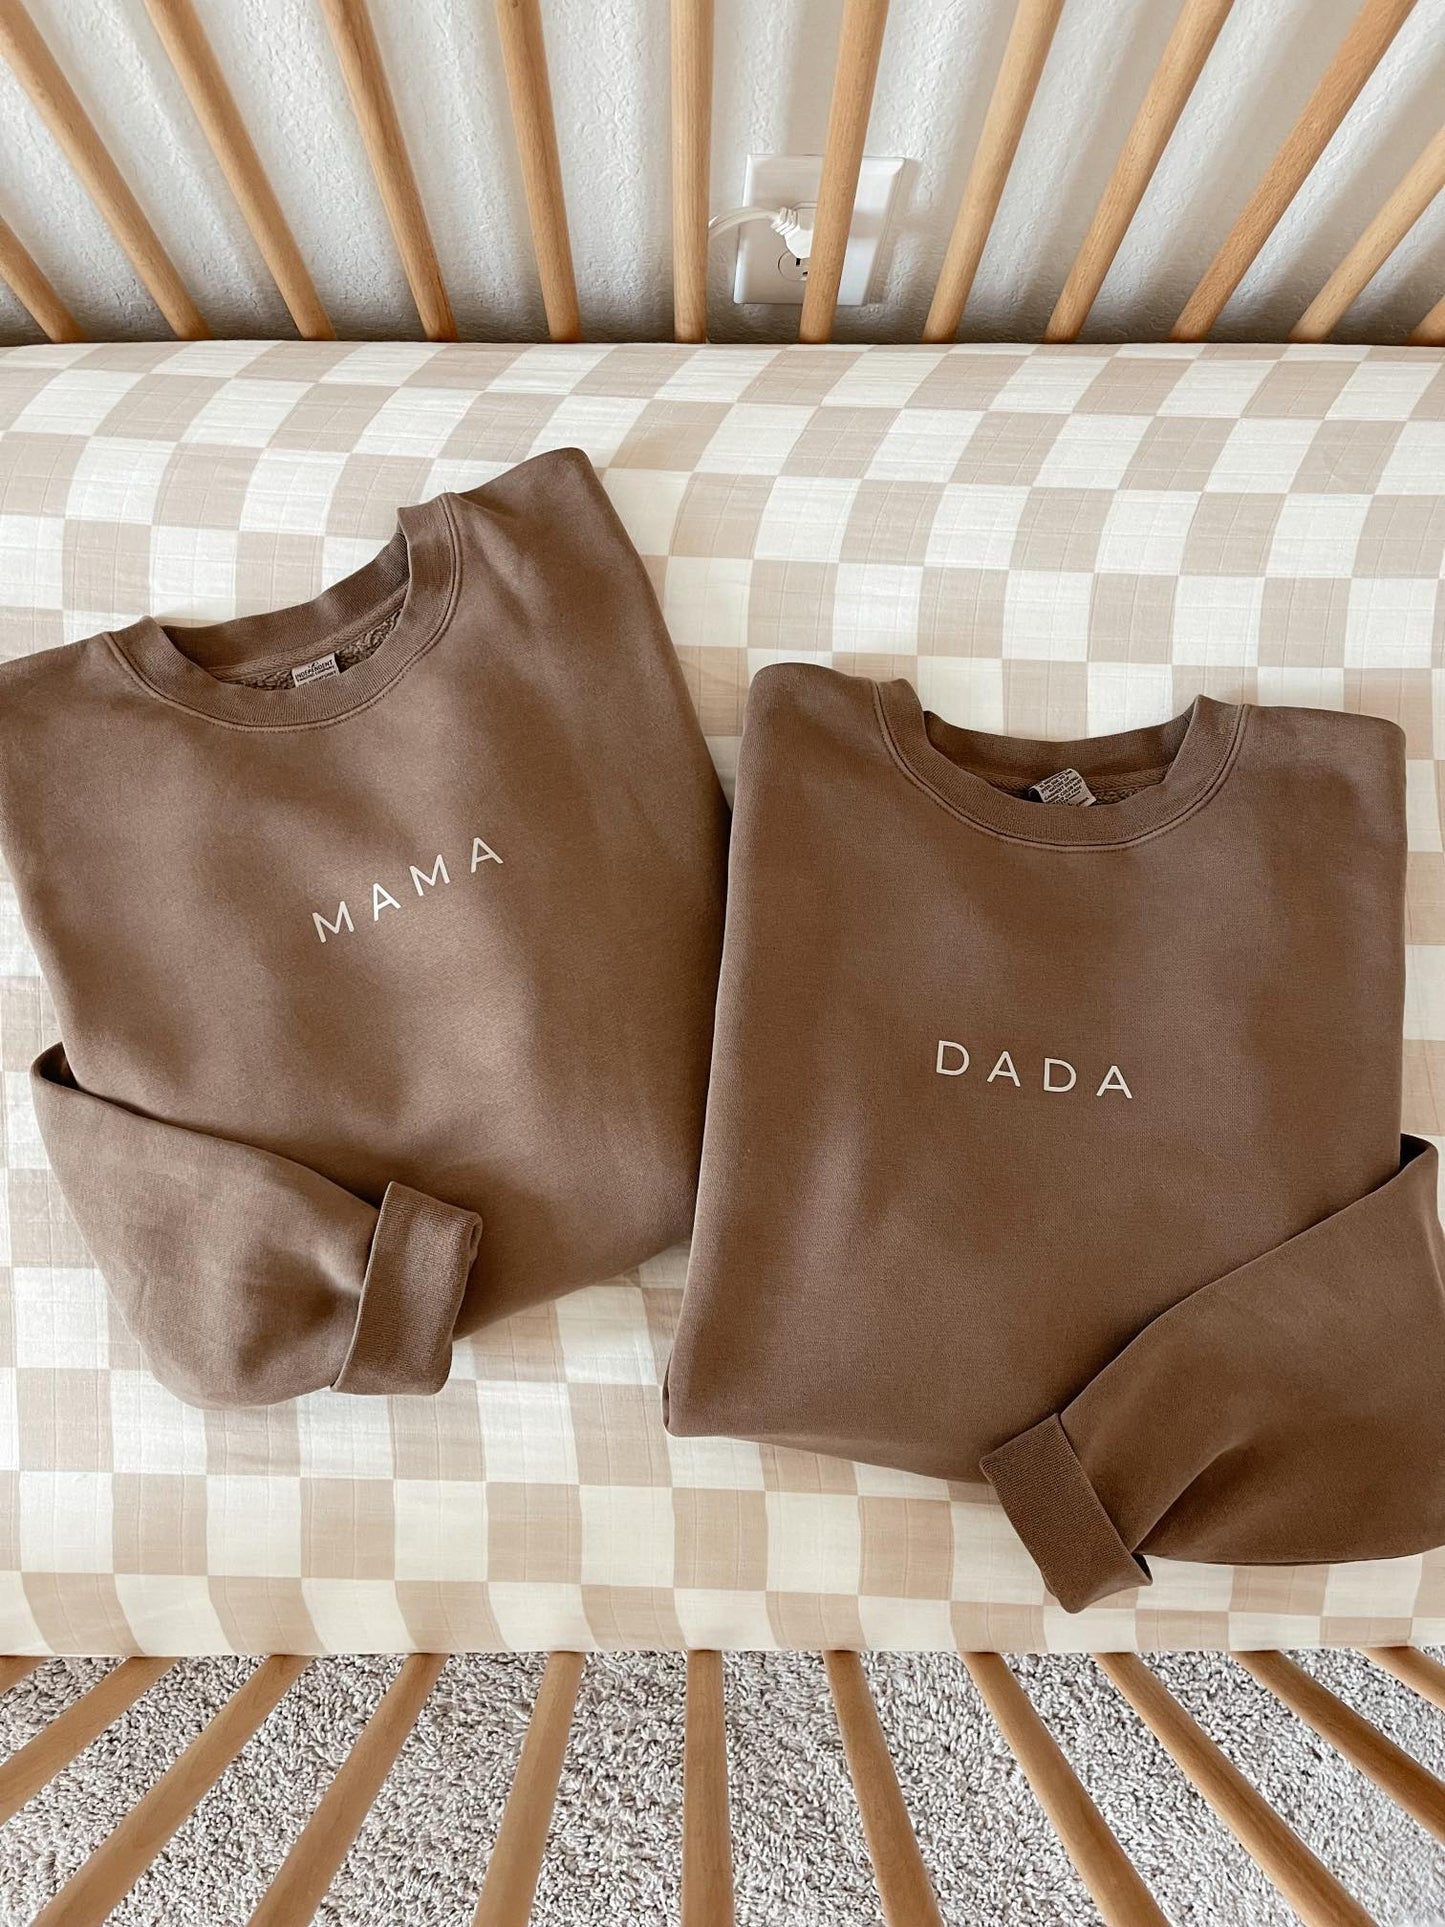 Dada (Tan Minimal) - Sweatshirt (Cocoa)